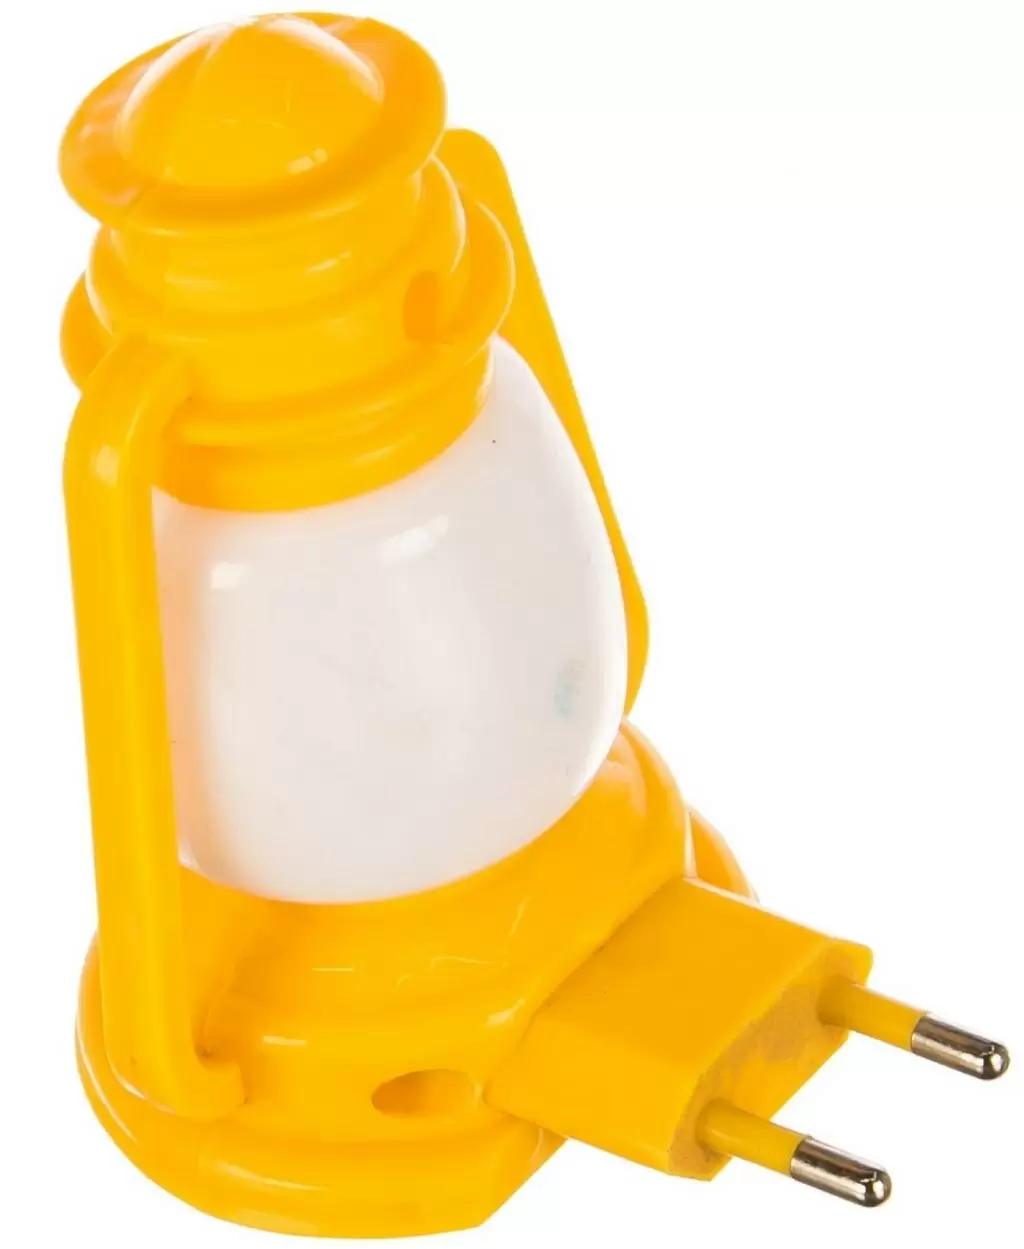 Ночной светильник Camelion NL-171, желтый